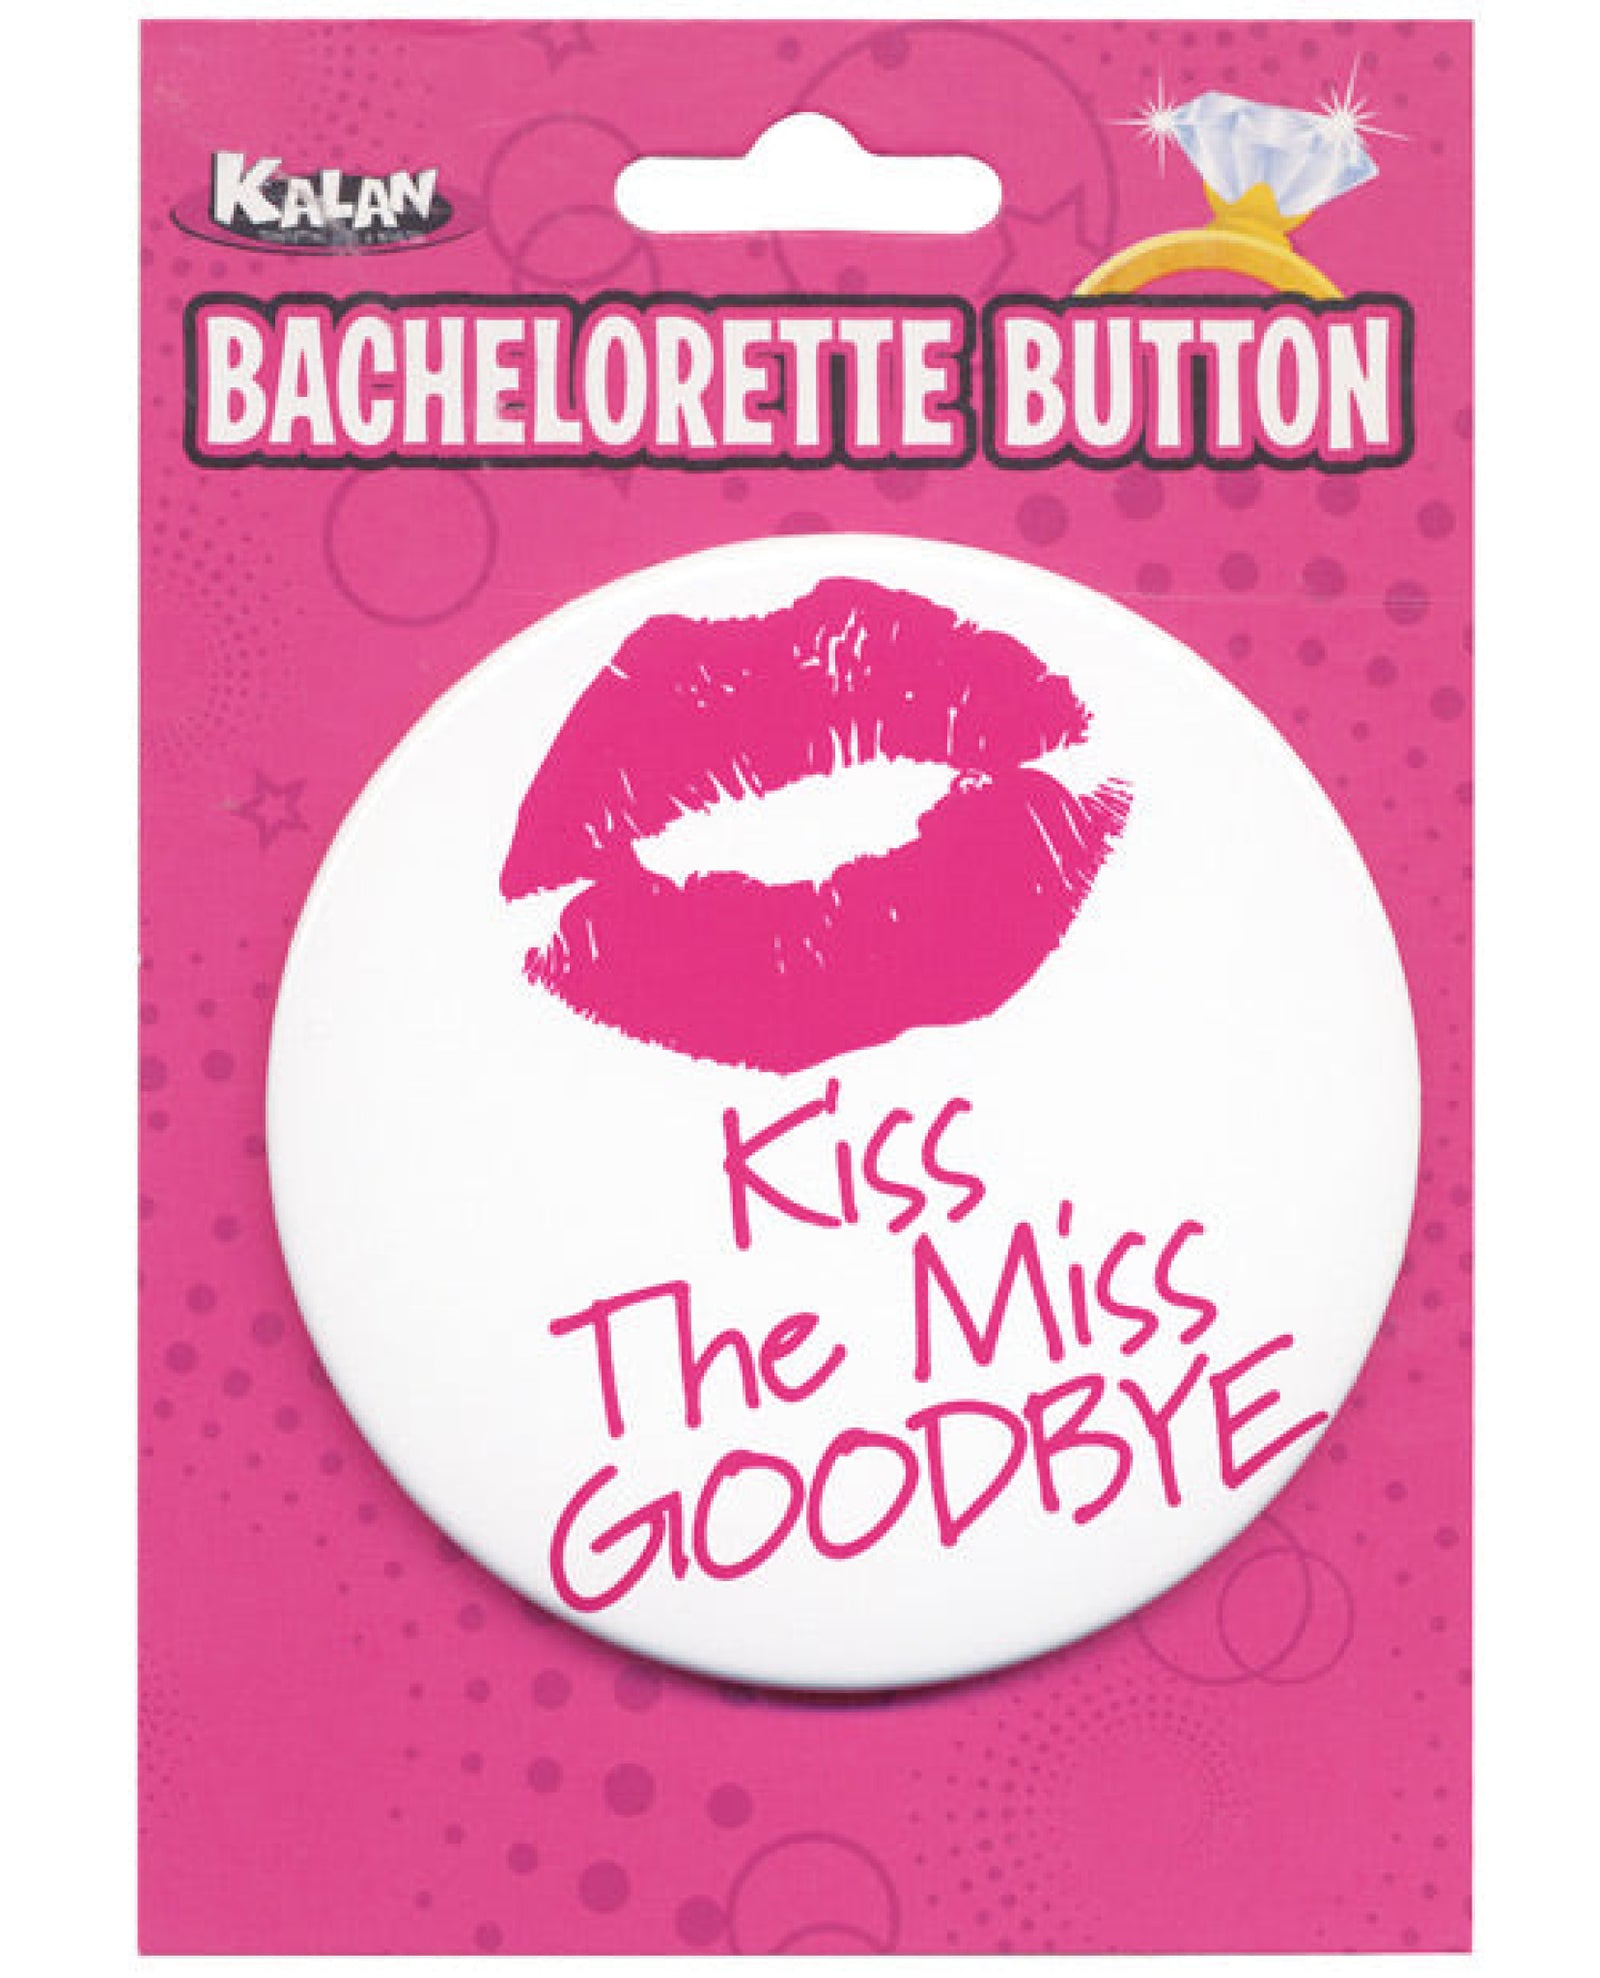 Bachelorette Button - Kiss The Miss Goodbye Kalan